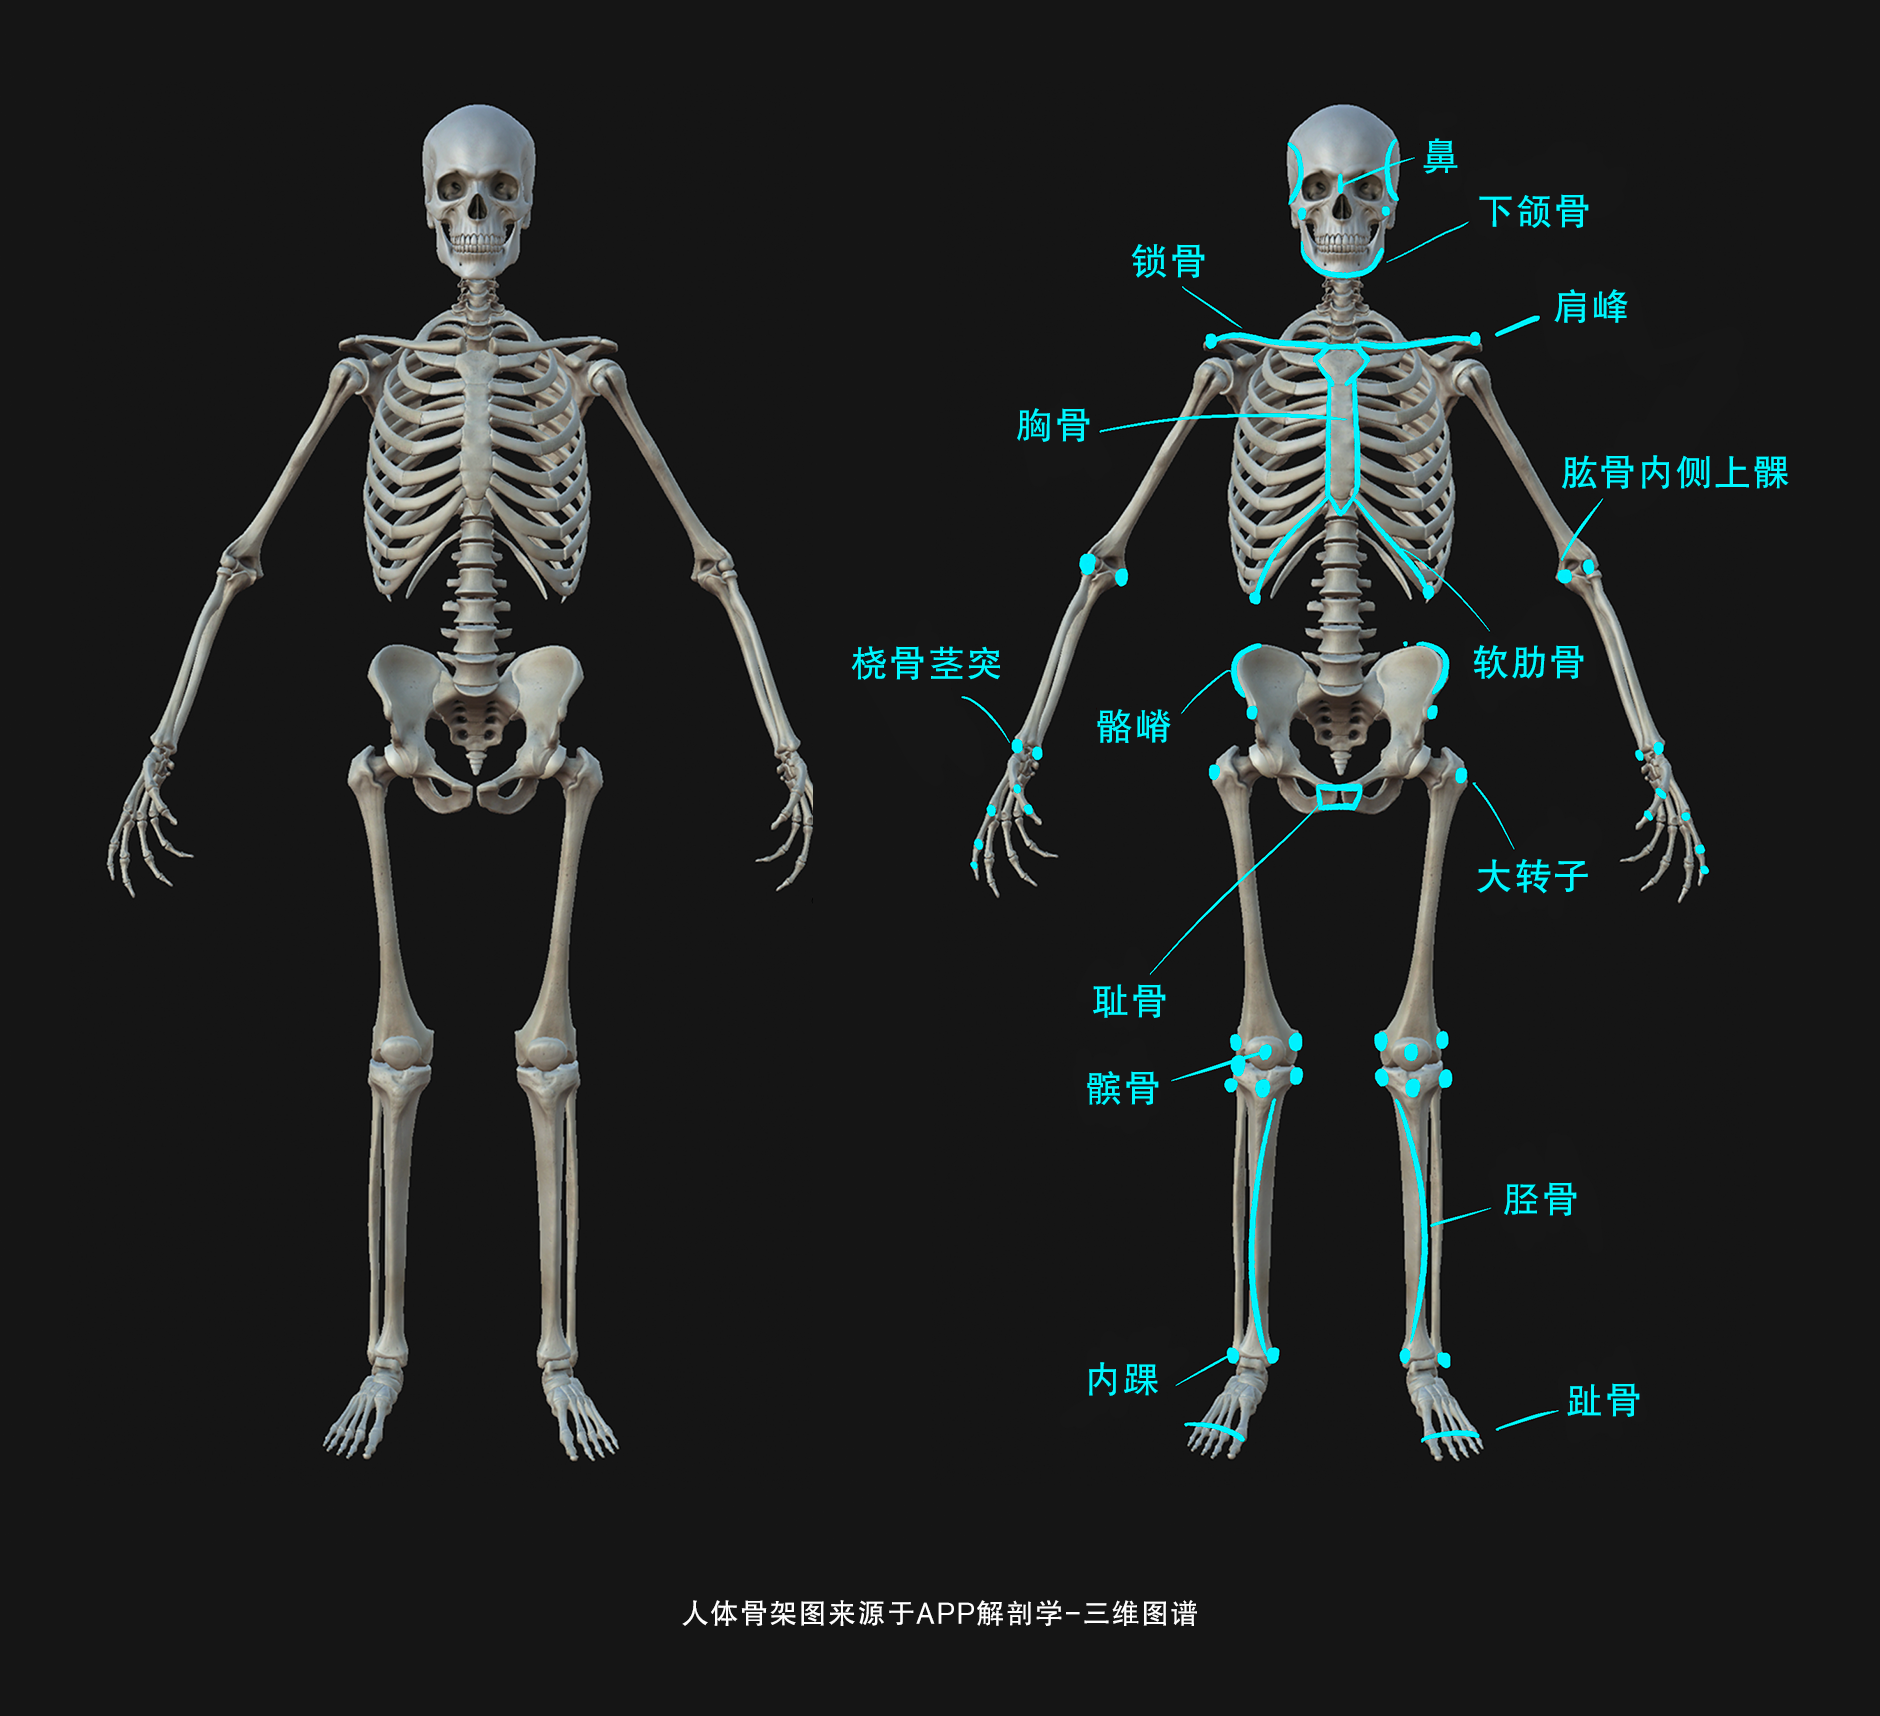 脊柱 骨架 骨骼图片下载 - 觅知网